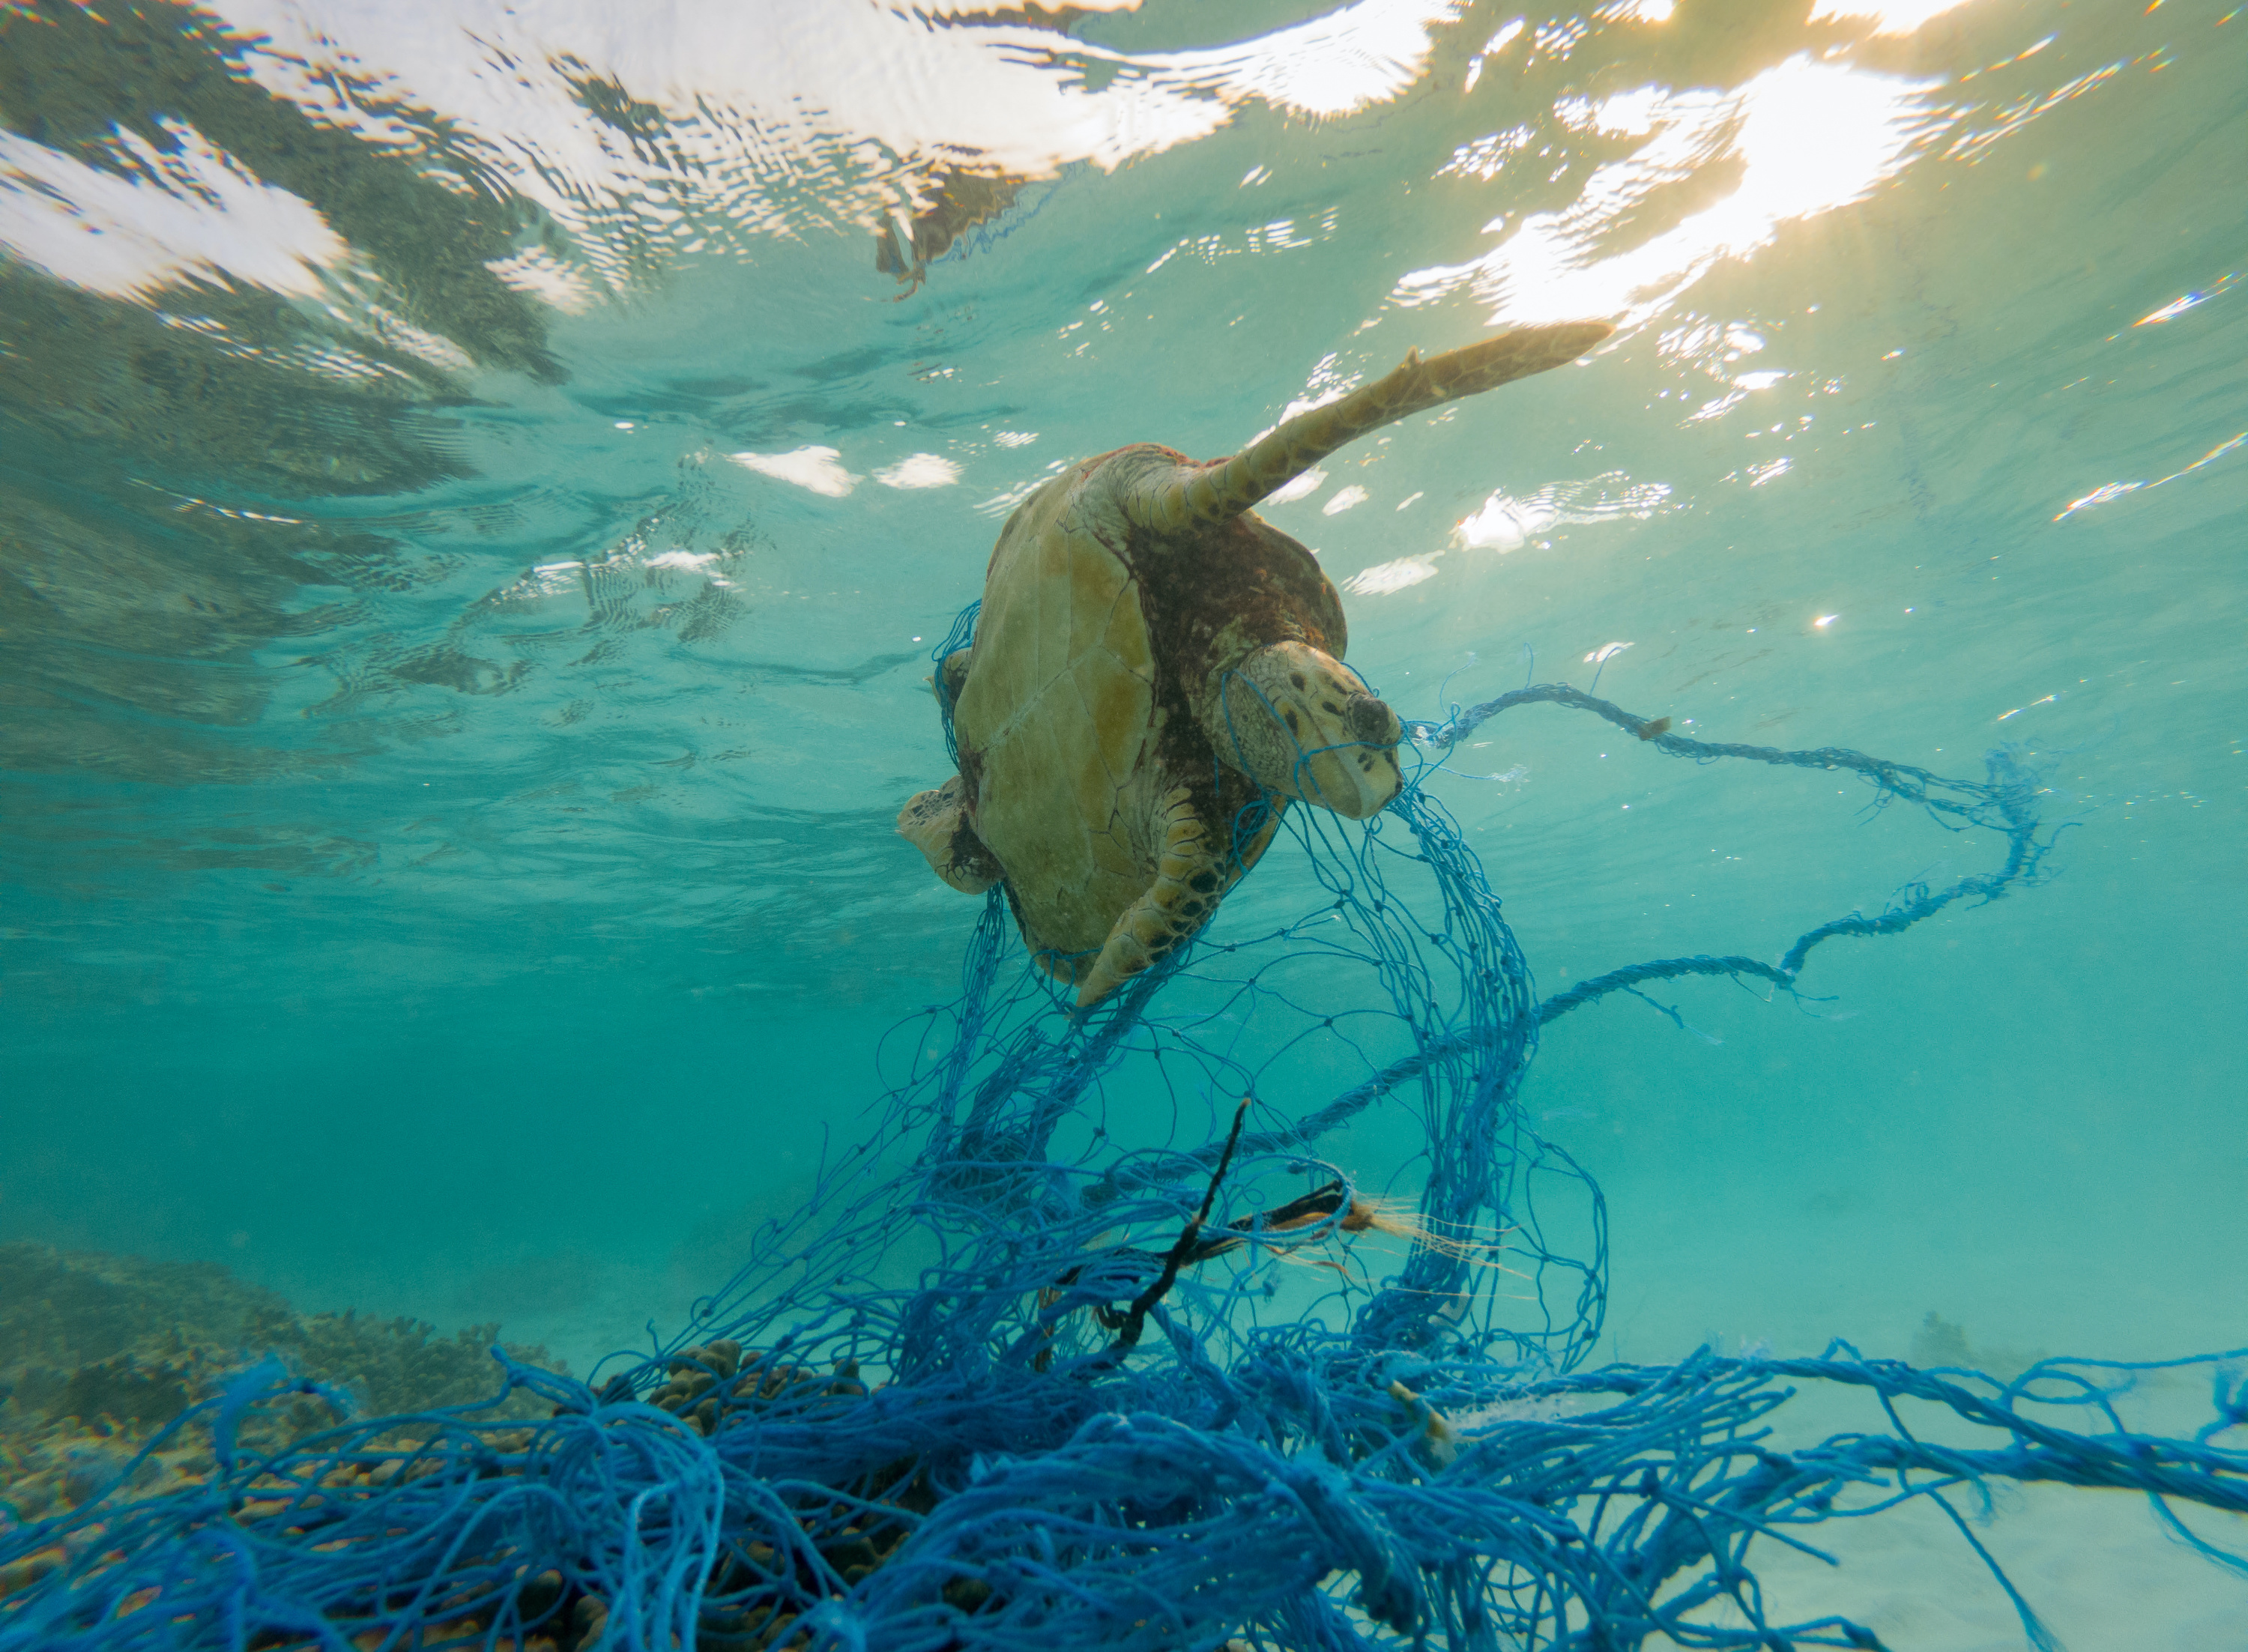 Les filets de pêche abandonnés constituent des pièges mortels pour les animaux marins. © aryfahmed, Adobe Stock